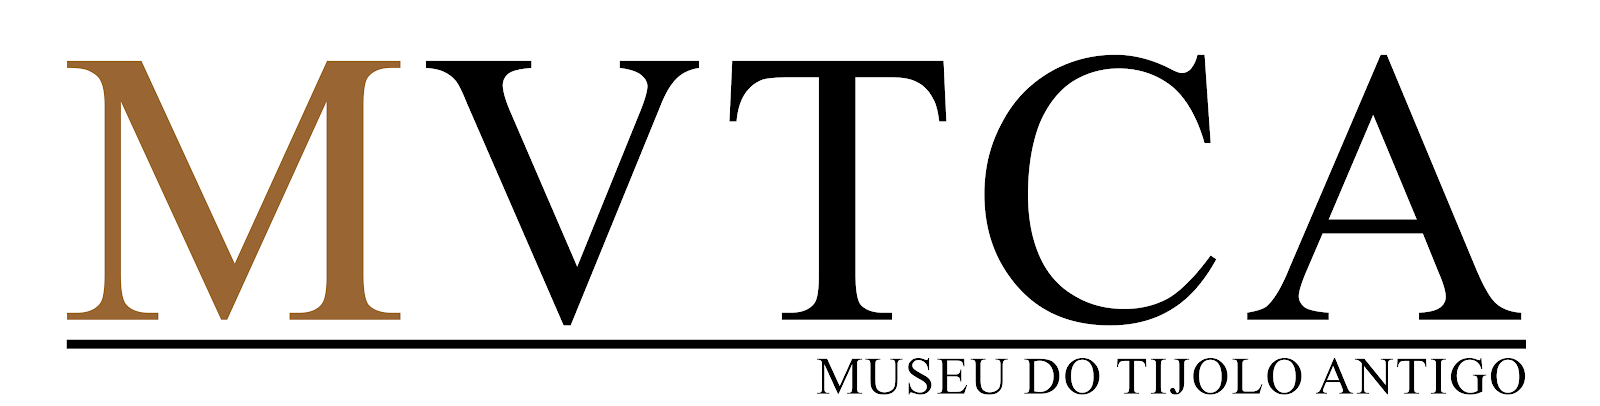 Blog - Museu do Tijolo Antigo